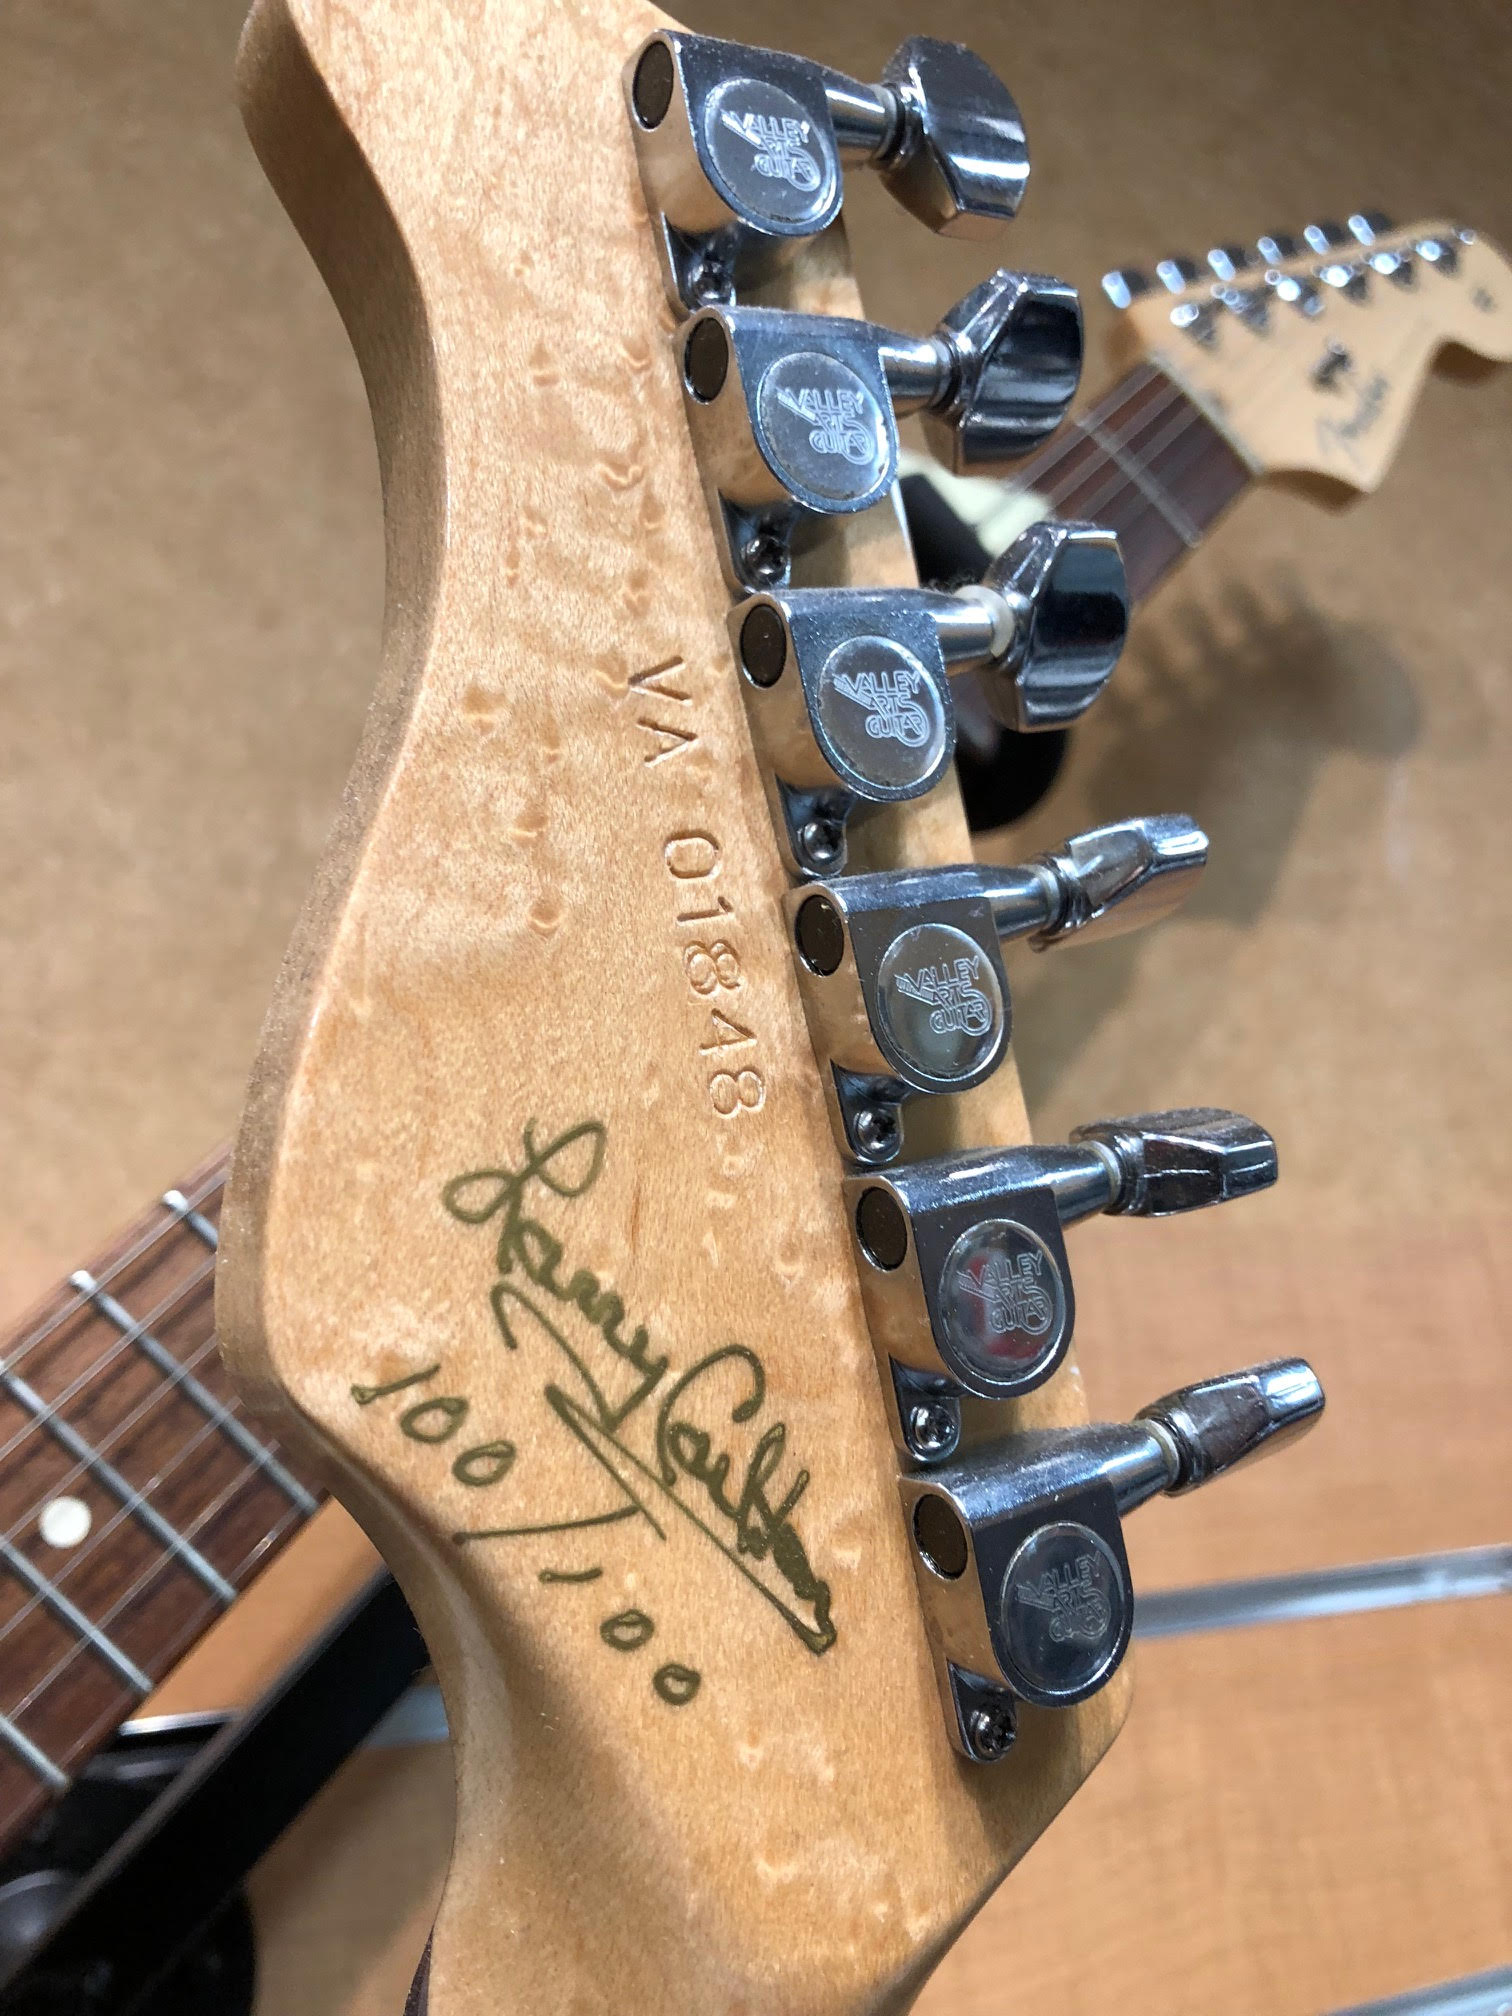 valley arts guitars serial numbers